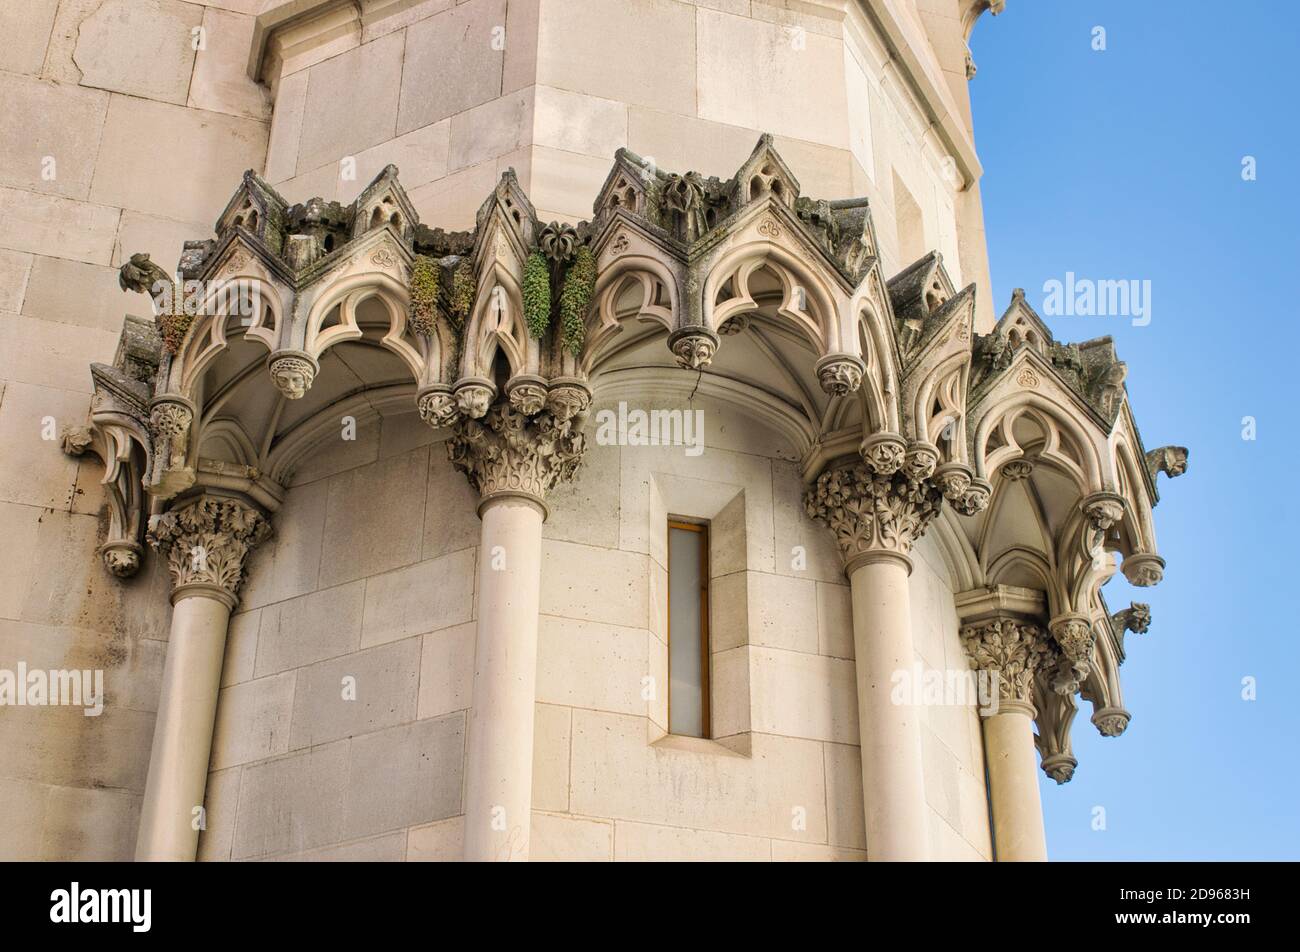 Architecture extérieure de style gothique de la cathédrale de Cuenca, Espagne Banque D'Images